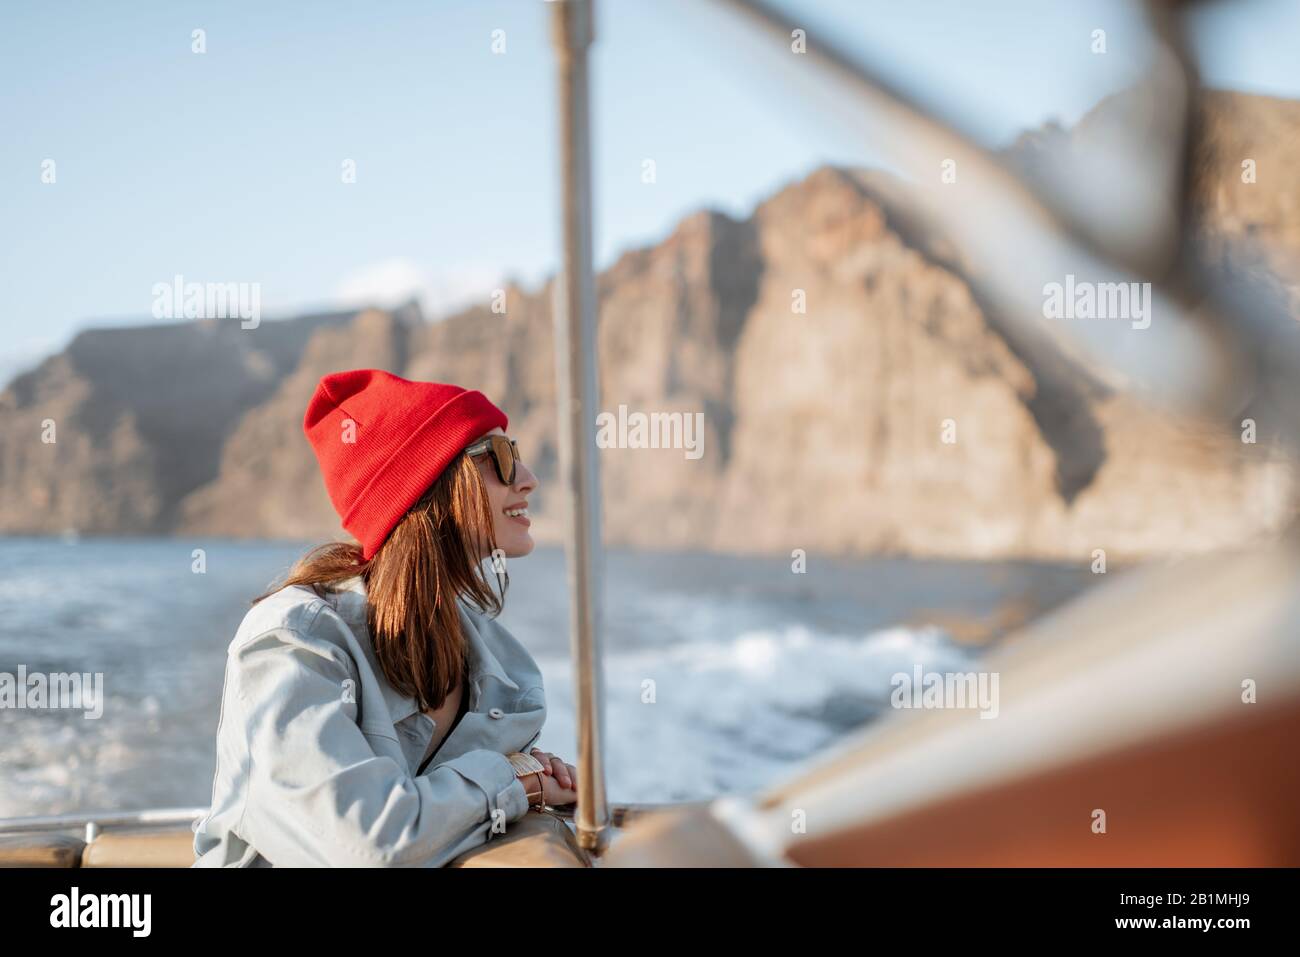 Ritratto di una giovane viaggiatore vestito casualmente con cappello rosso e jeans che naviga su uno yacht vicino alla costa rocciosa. Concetto di uno stile di vita e di viaggio spensierati Foto Stock